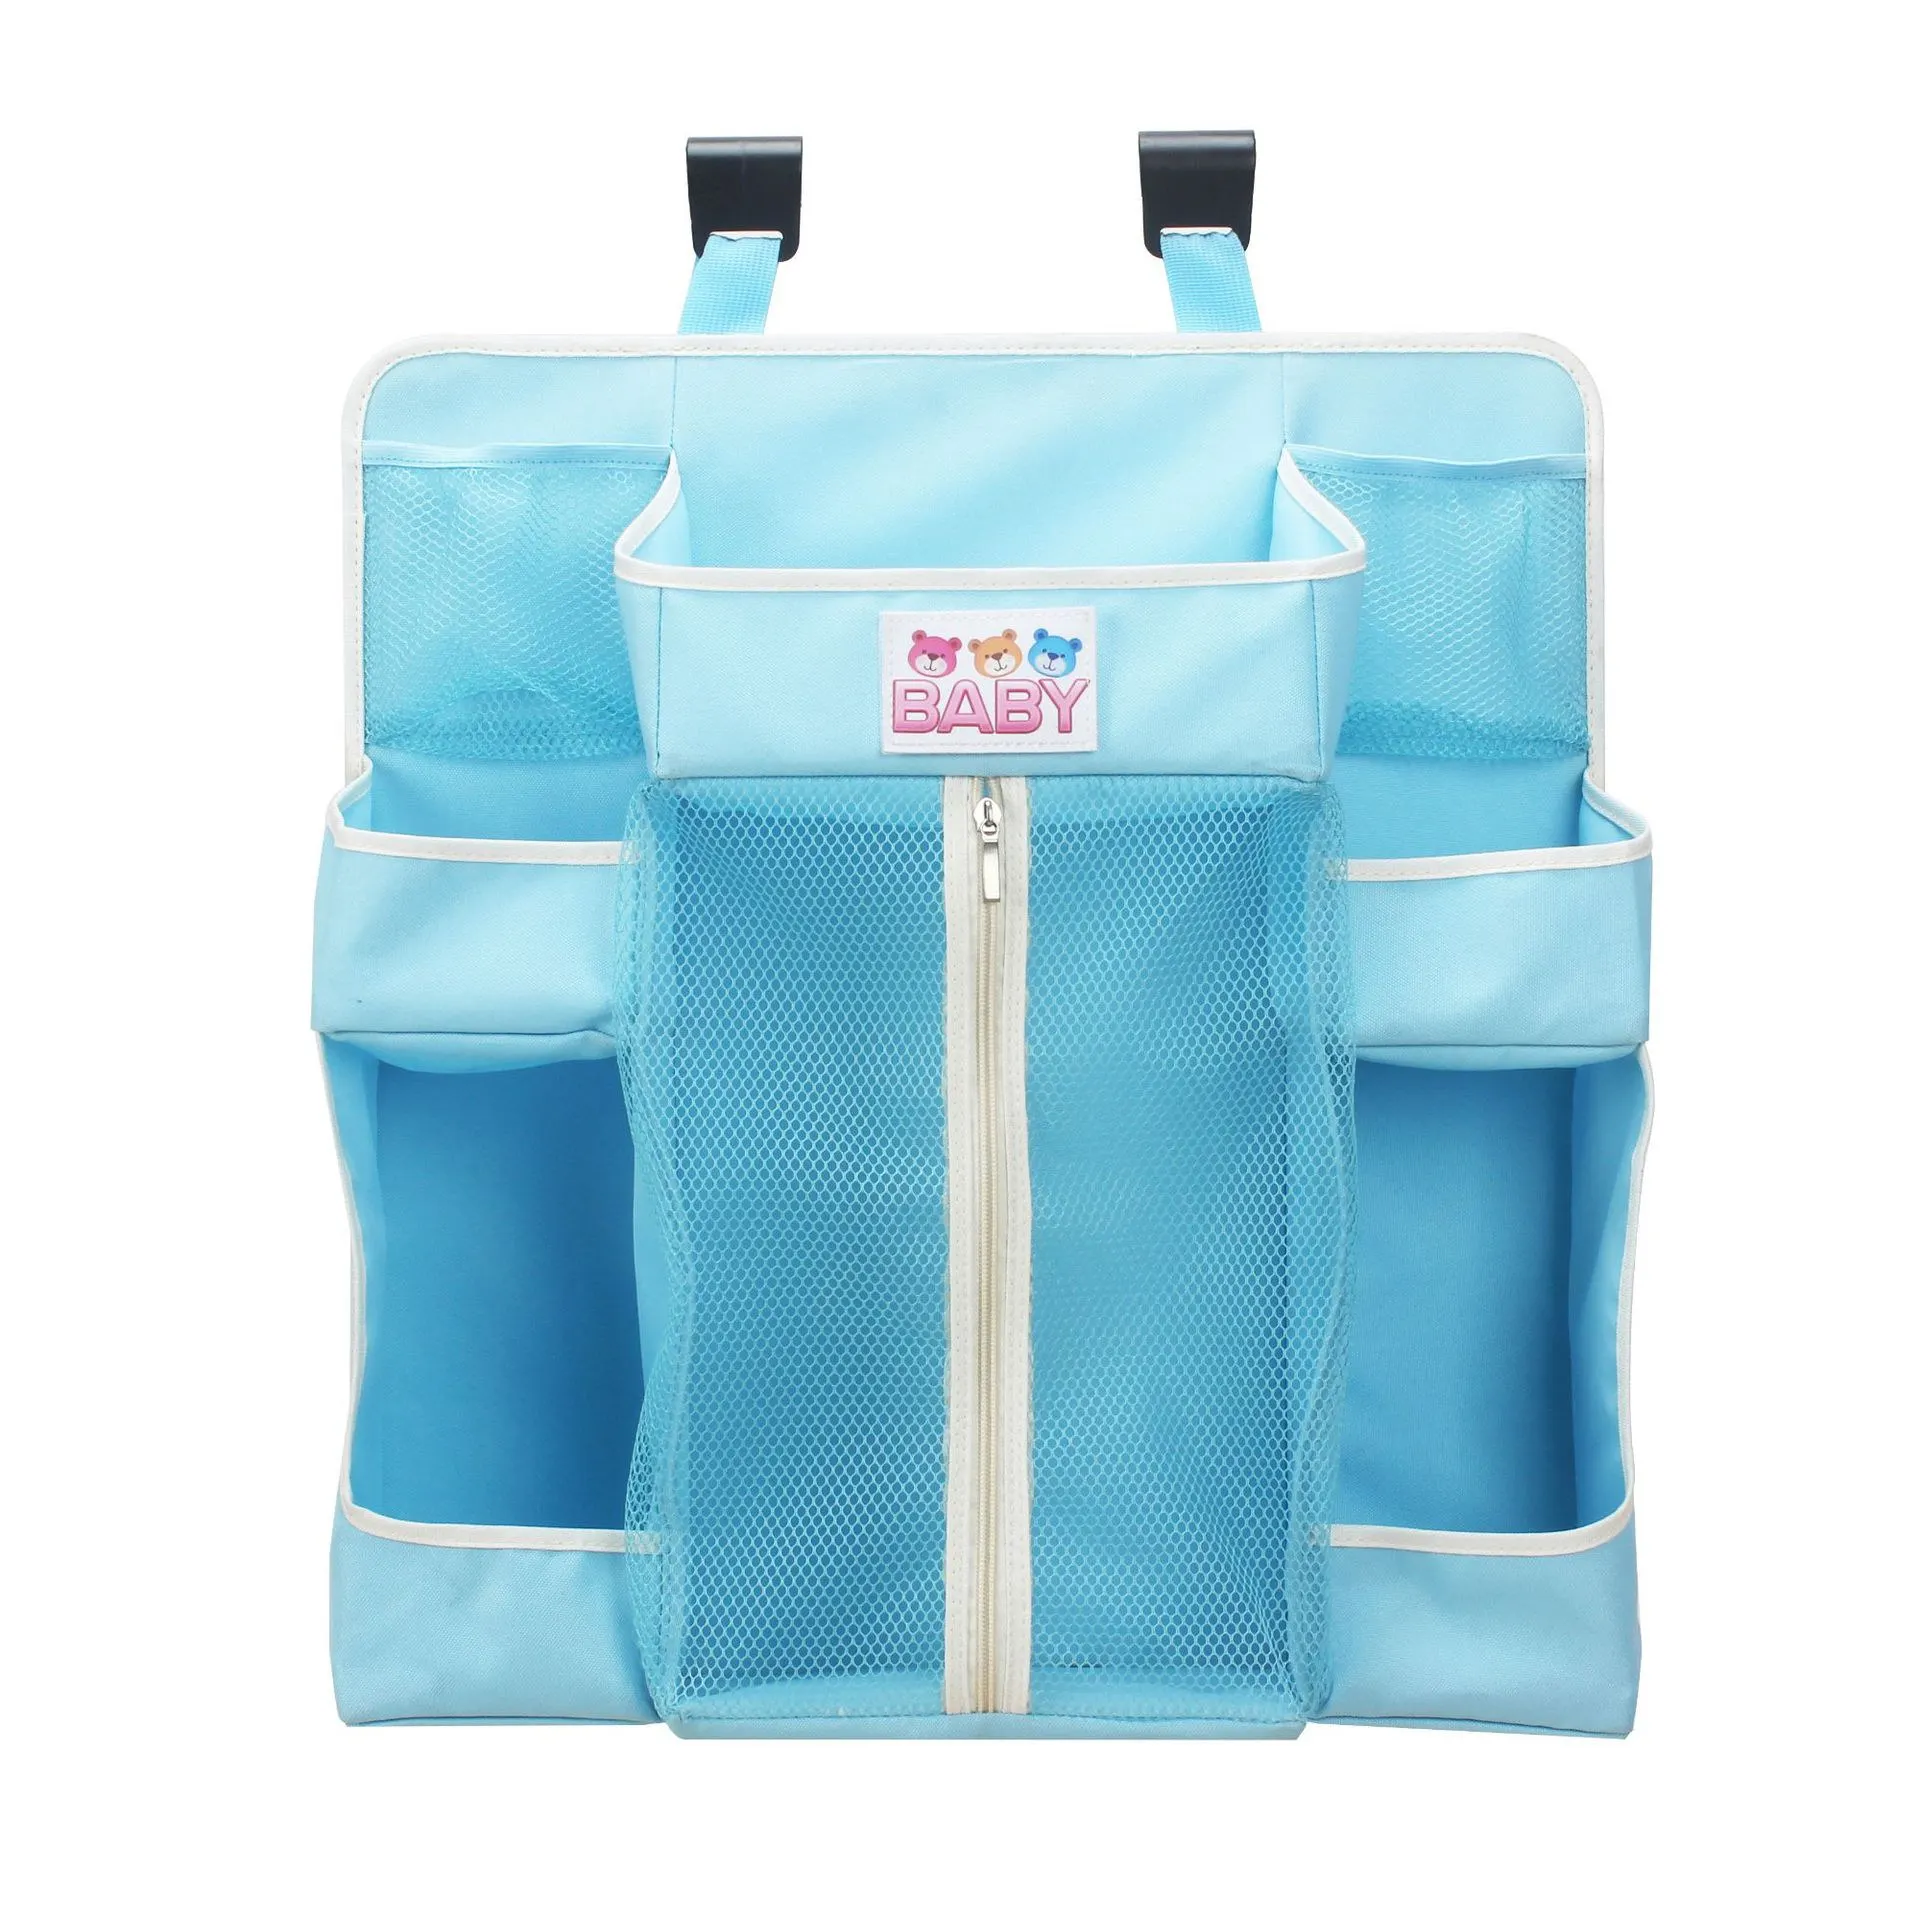 Многоцелевой кроватки Детская кровать висячая сумка Портативный водонепроницаемые подгузники Органайзер прикроватный кровать бампер Жесткая Сумка постельные принадлежности бортики в кроватку для новорожденных - Цвет: sky blue